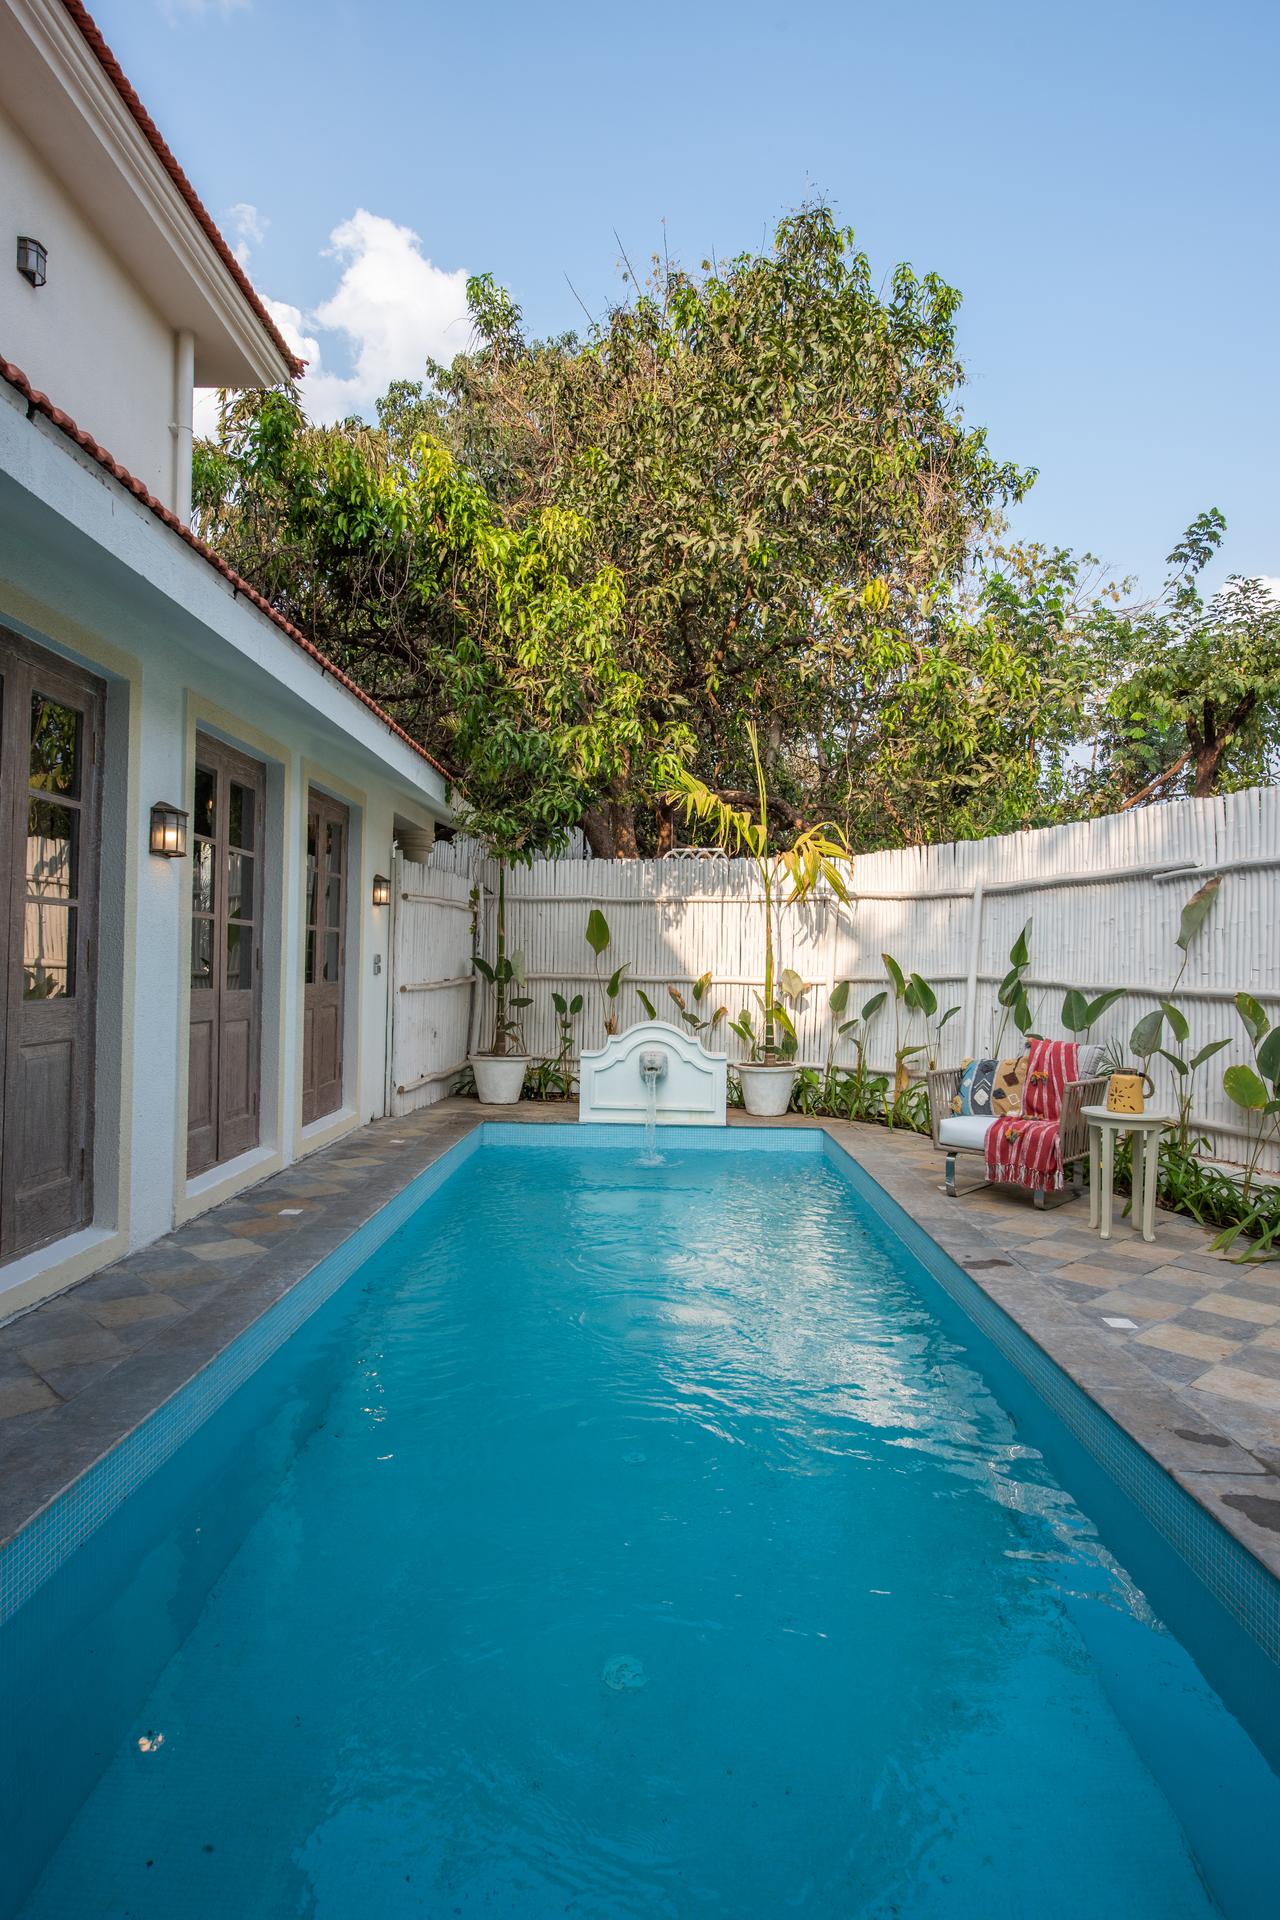 Monforte A - Premium Villas for Sale in Goa - Pool View